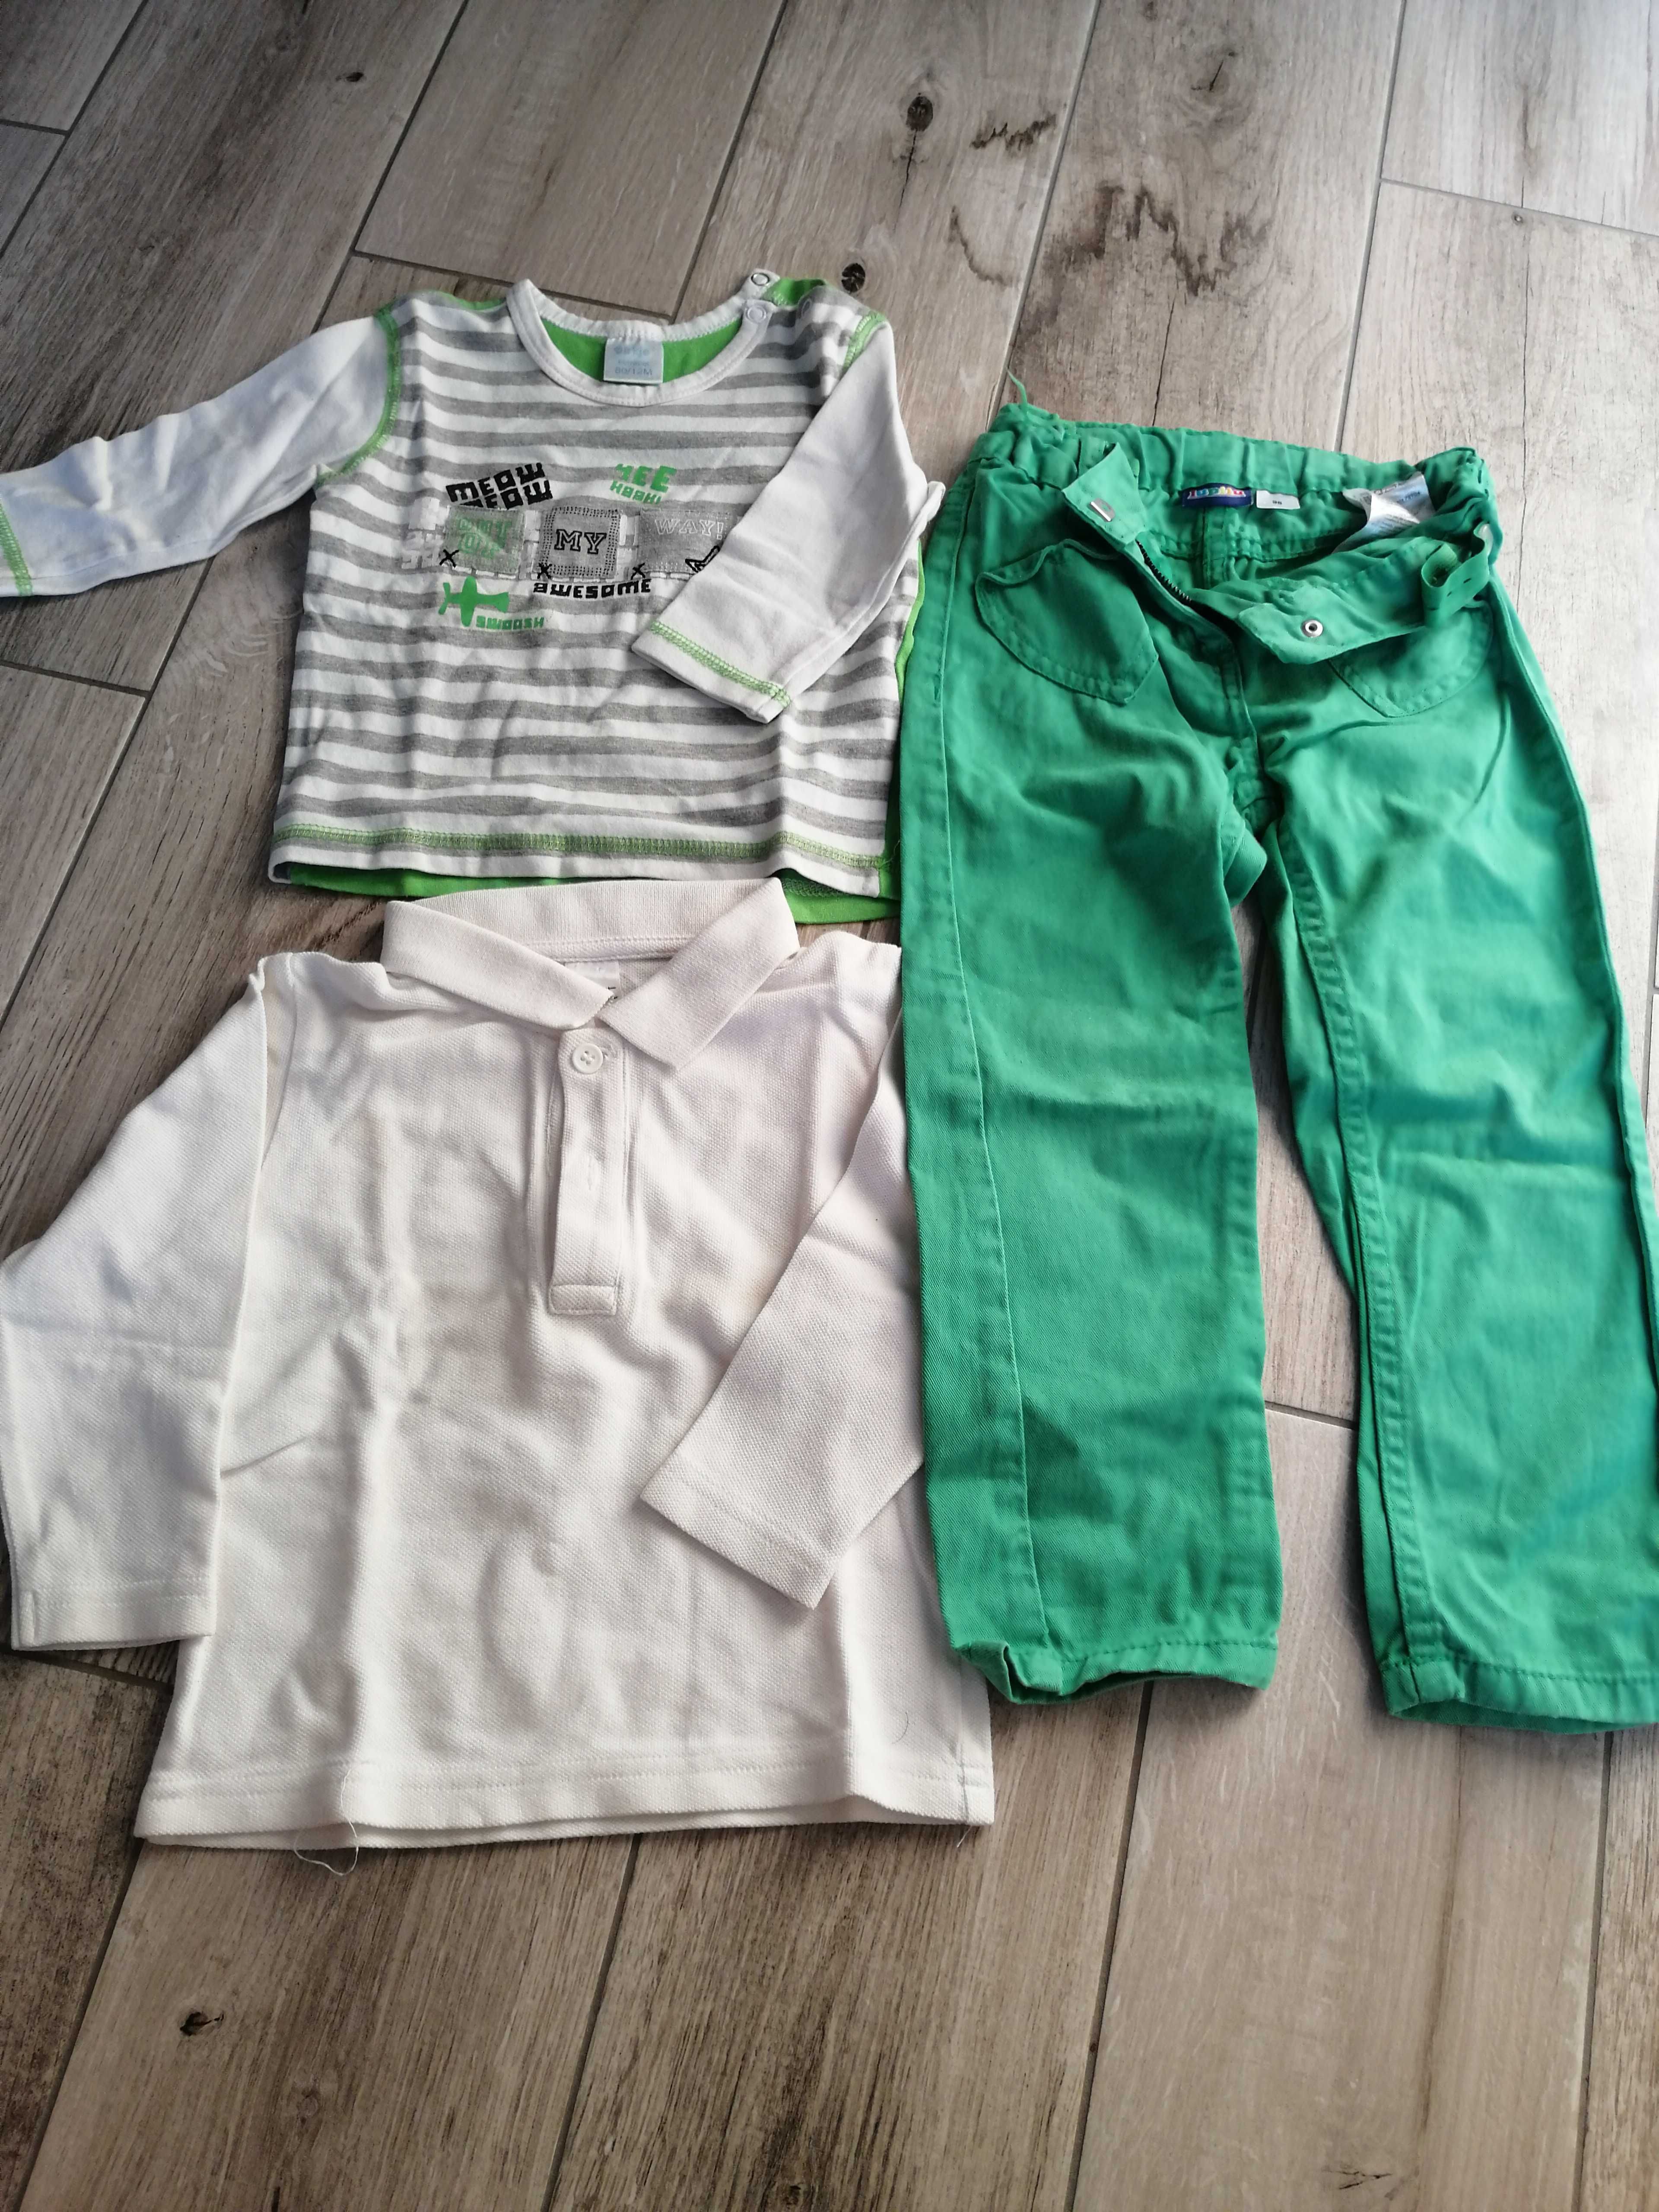 Zestaw ubrań dla chłopca 74 - 86 koszulki spodnie